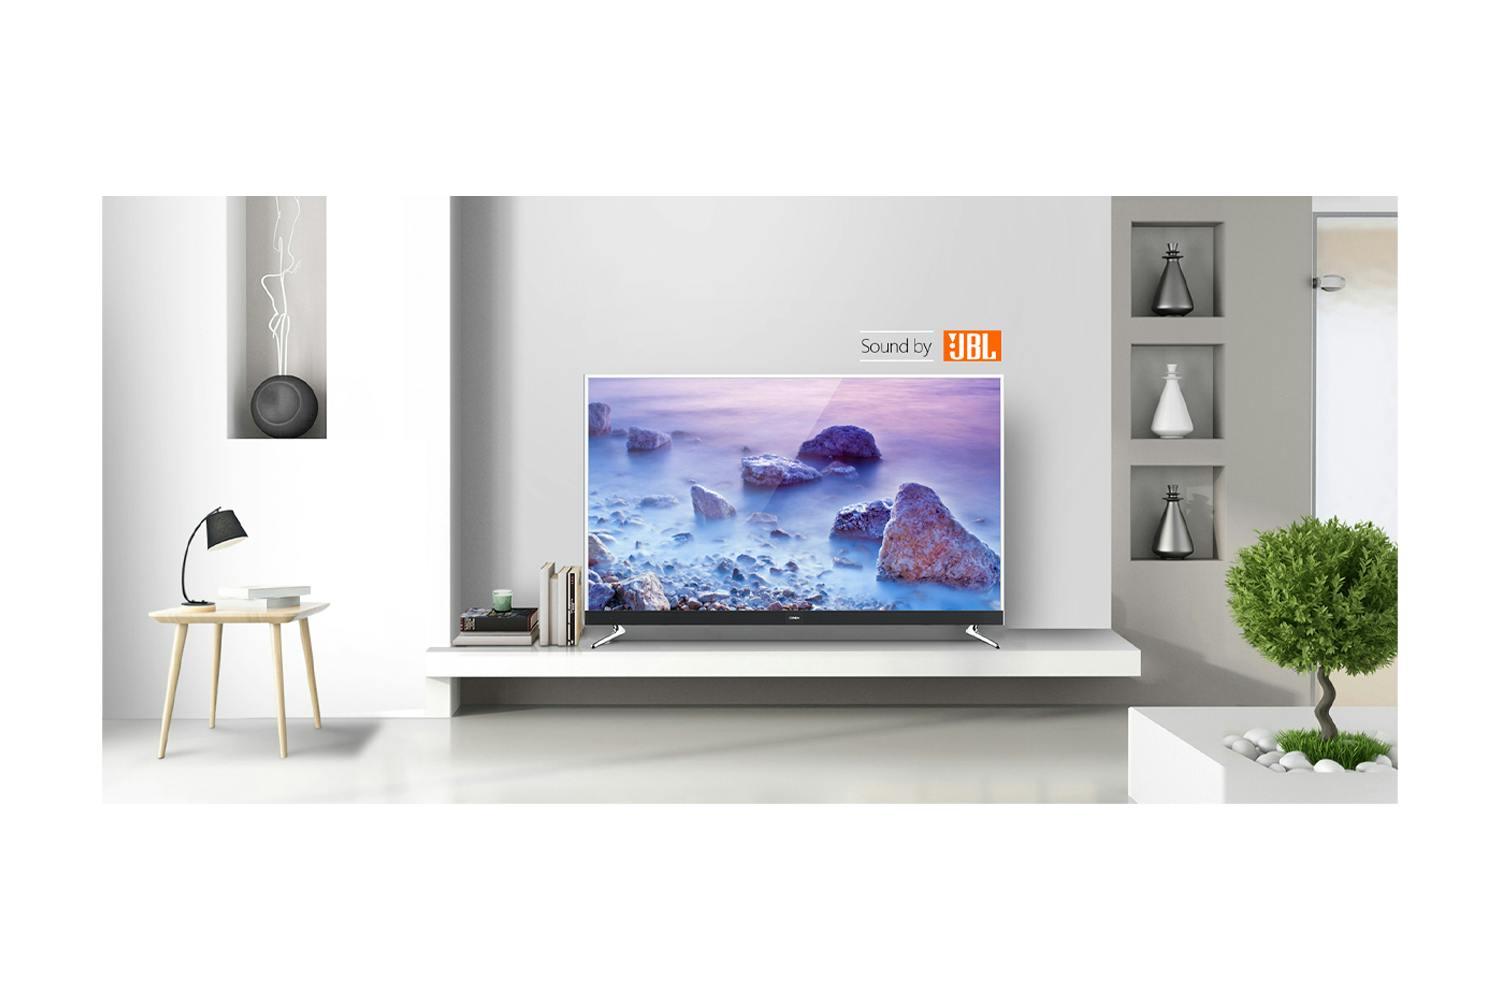 Konka 55" 4K Smart TV